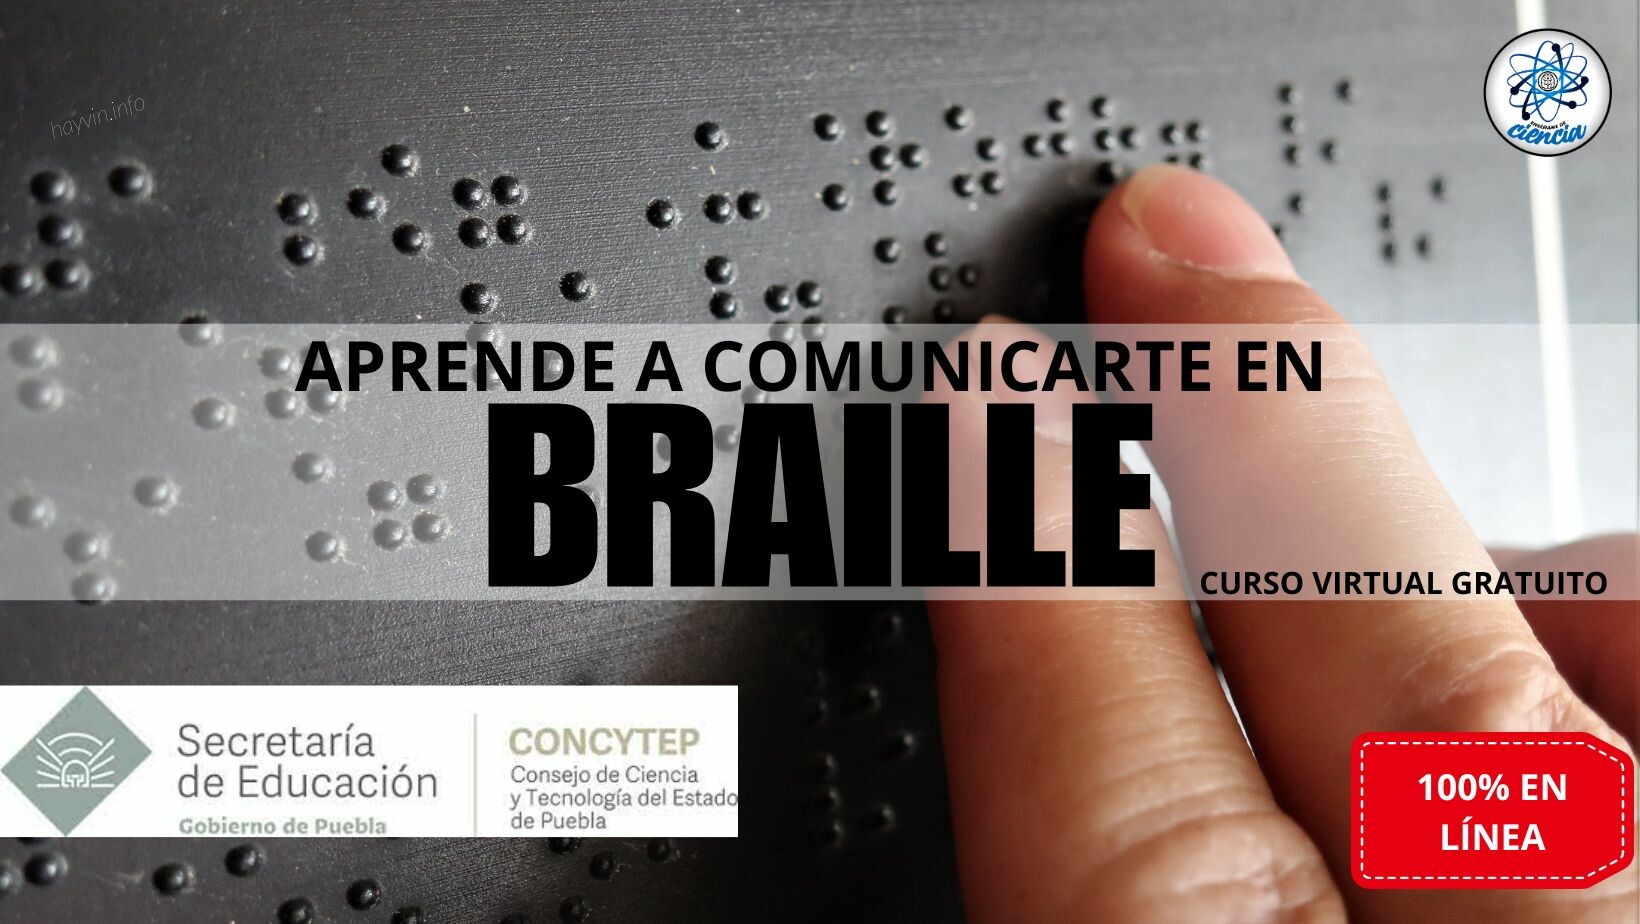 Puebla kormánya INGYENES kurzust indított, hogy megtanuljon Braille-írással olvasni és írni